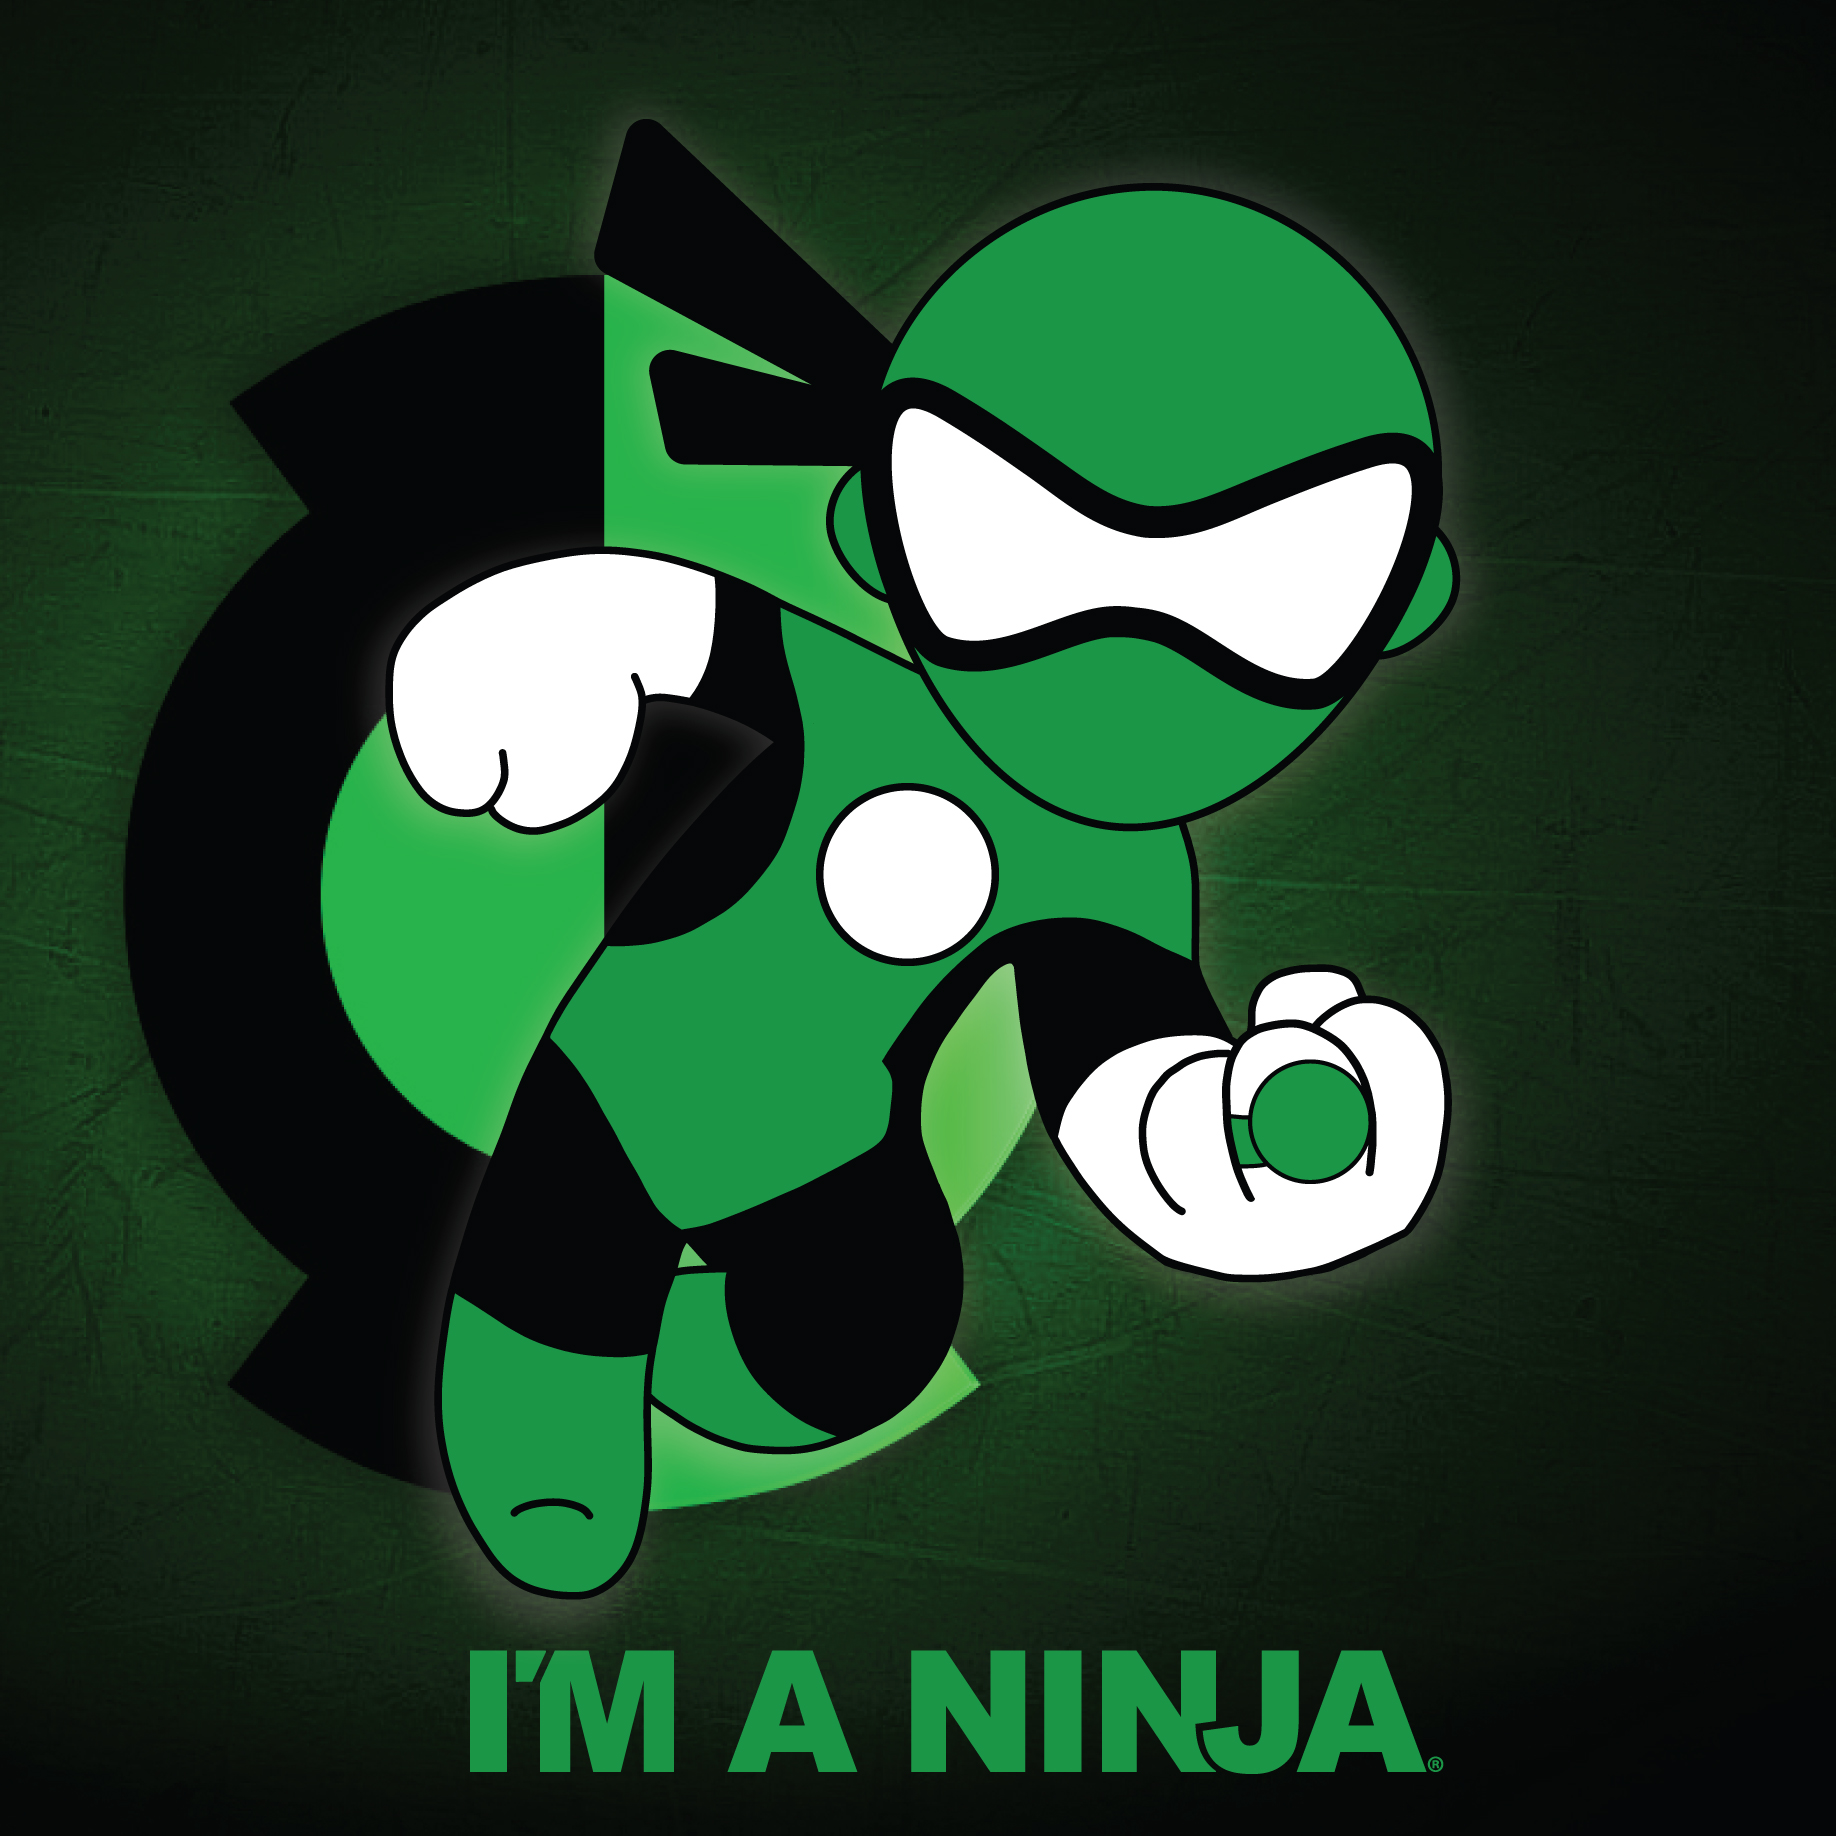 Green Lantern x I'M A NINJA